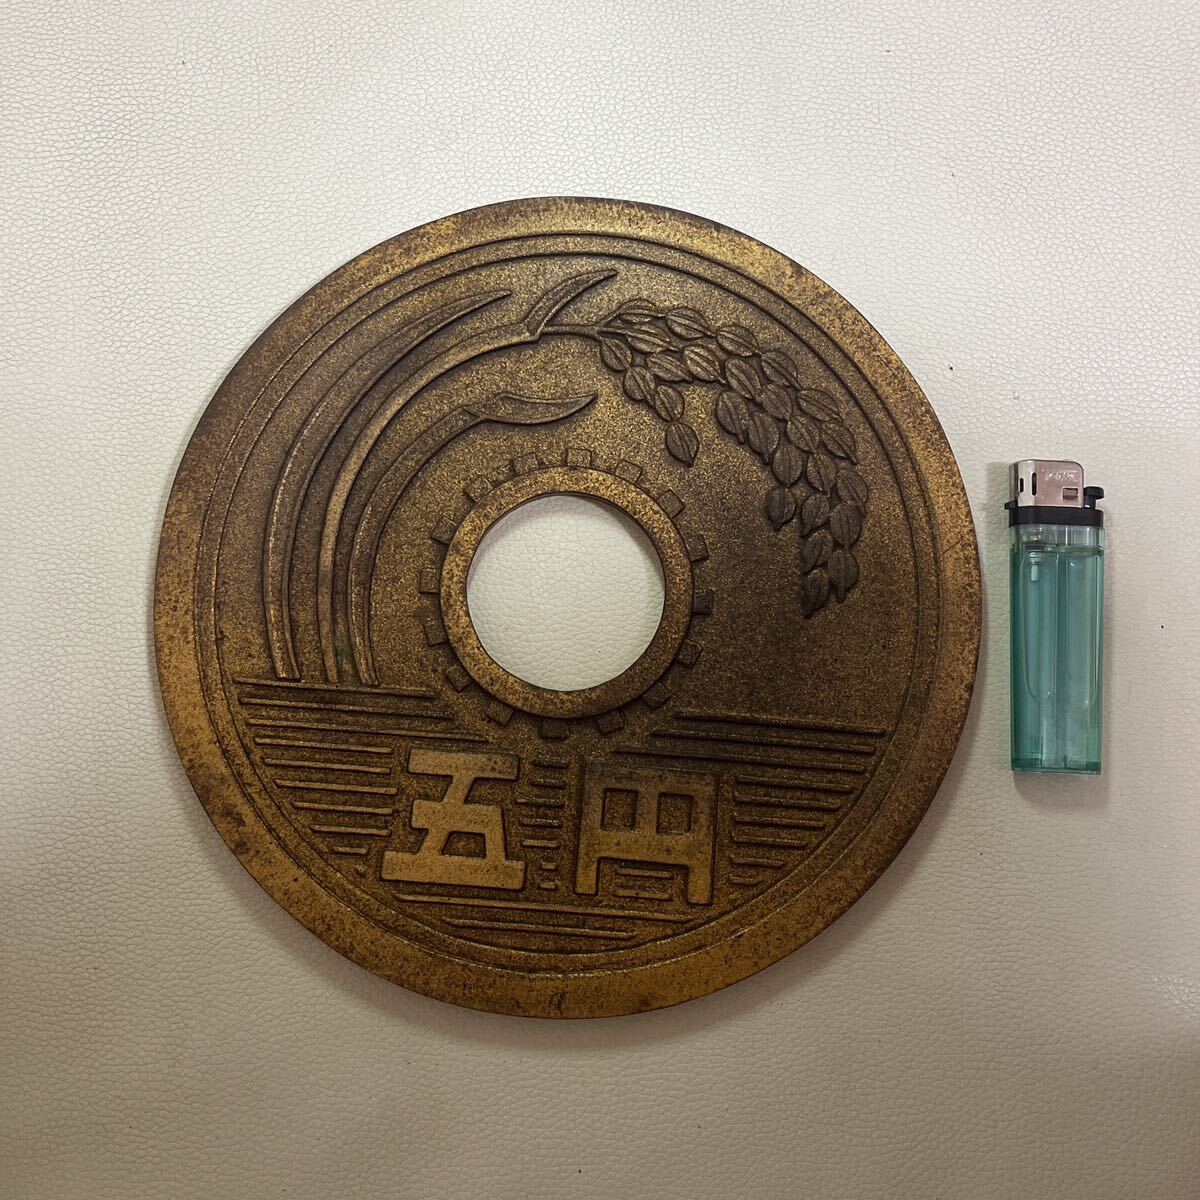 五円玉 置物 特大5円玉 直径約21.3㎝ 硬貨 金運 オブジェ 和風縁起物 レトロの画像1